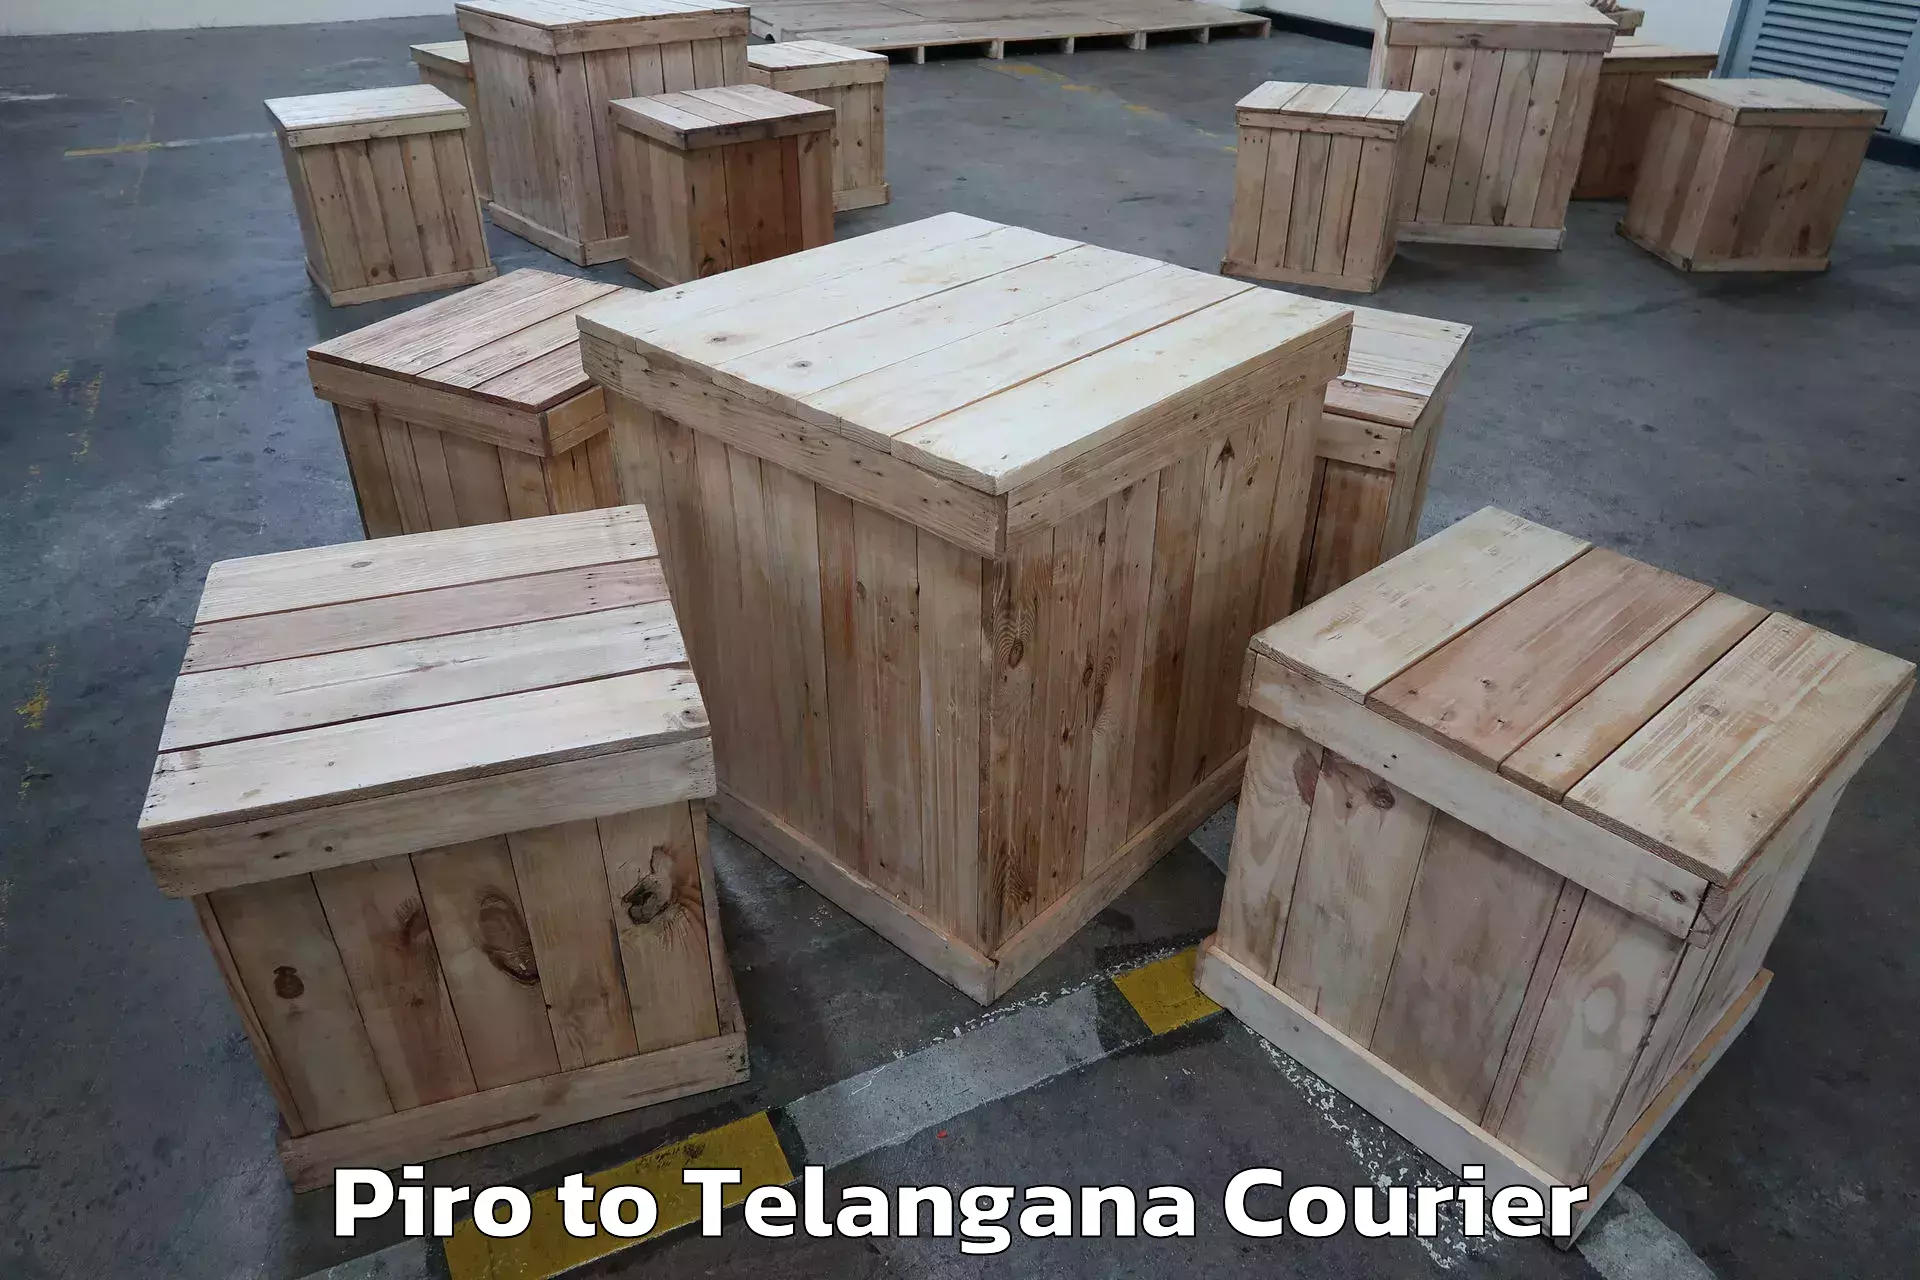 Full-service relocation Piro to Telangana